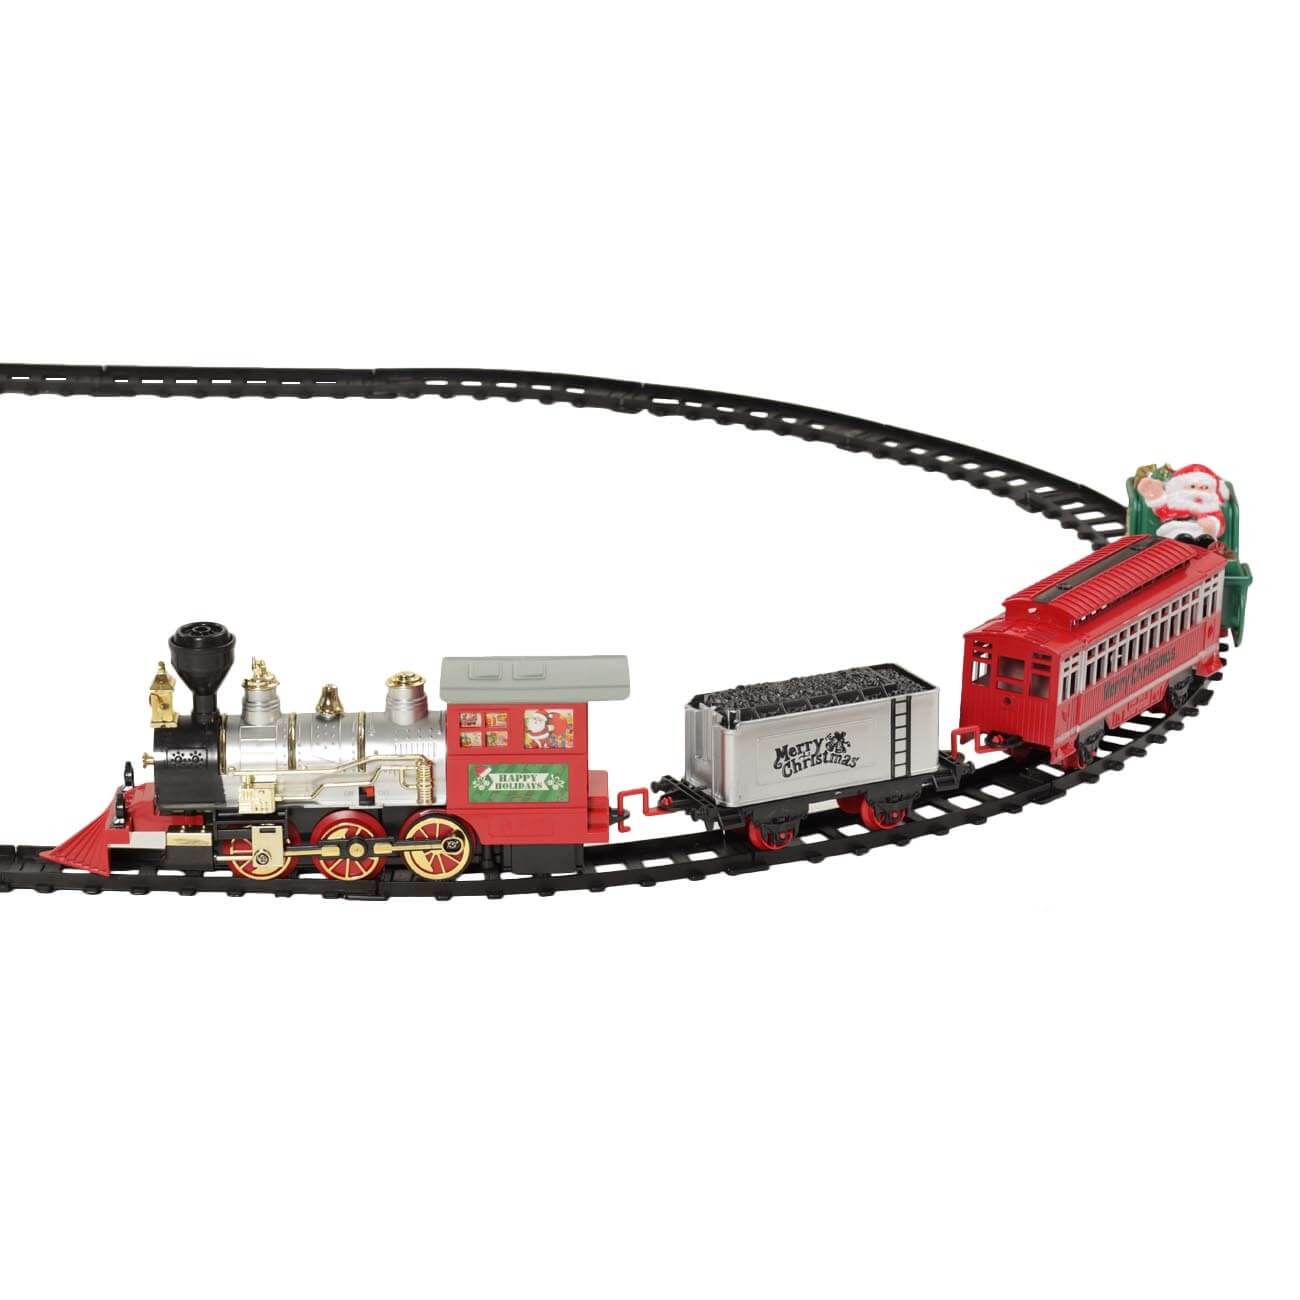 Железная дорога игрушечная, S, музыкальная, с подсветкой/дымом, пластик, Game rail железная дорога игрушечная 152 см музыкальная с подсветкой дымом пластик поезд game rail